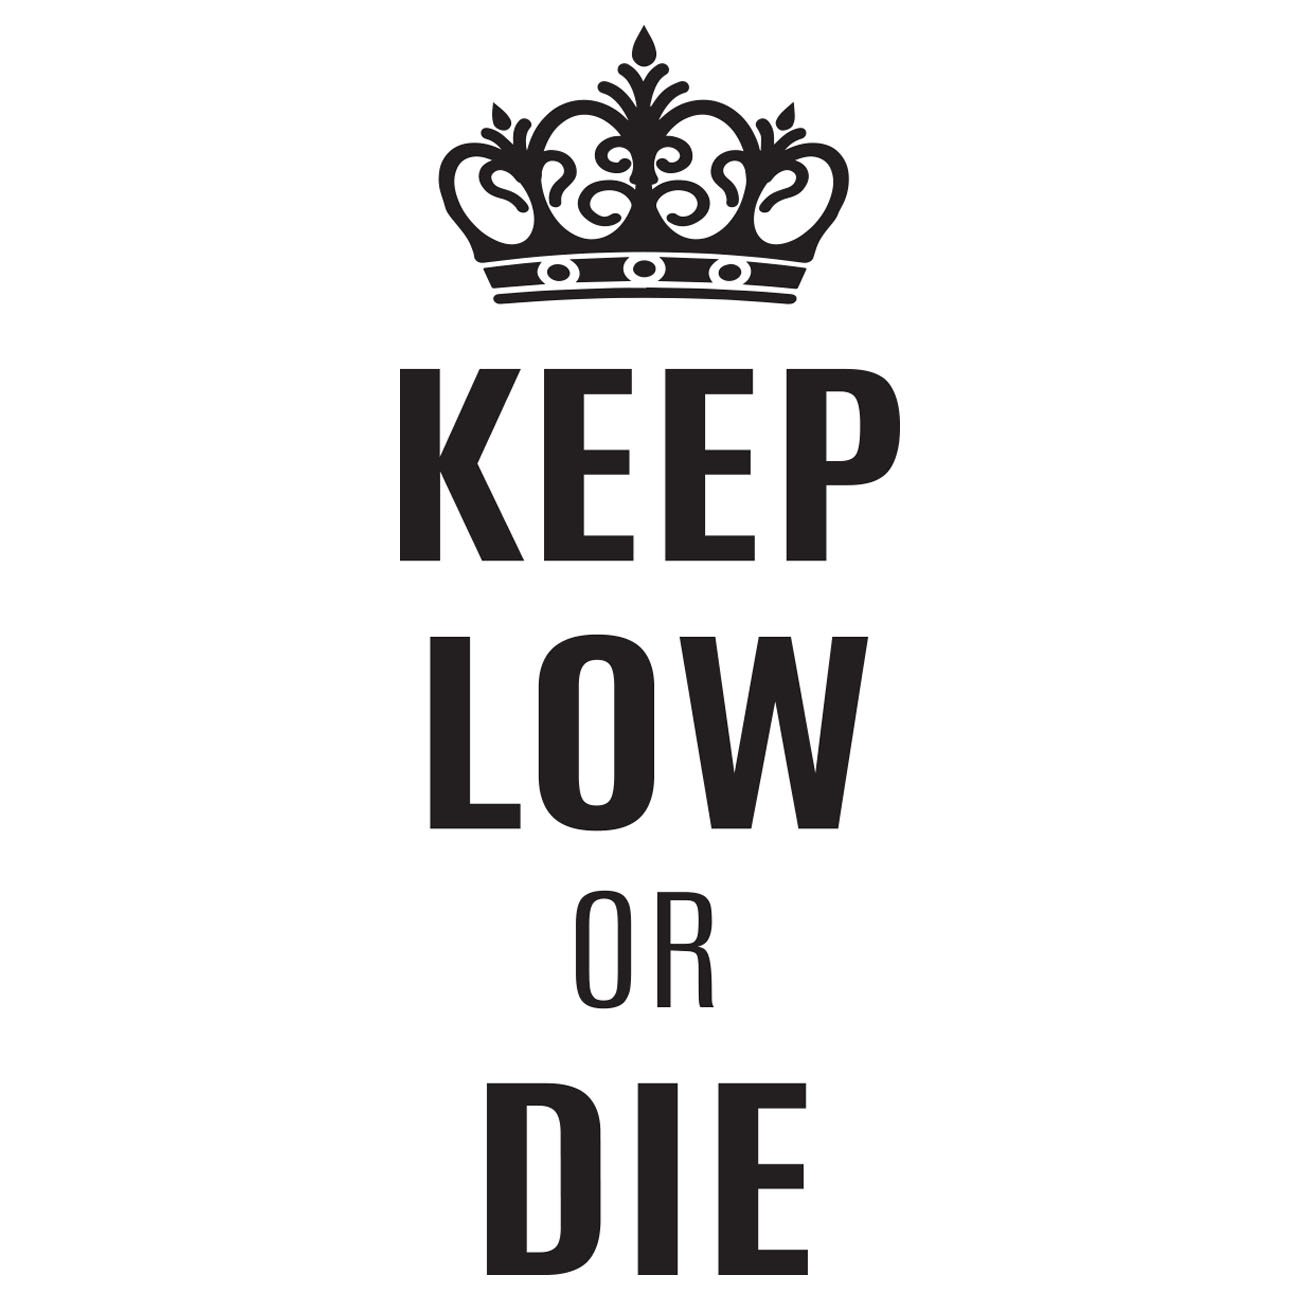 Keep low or die